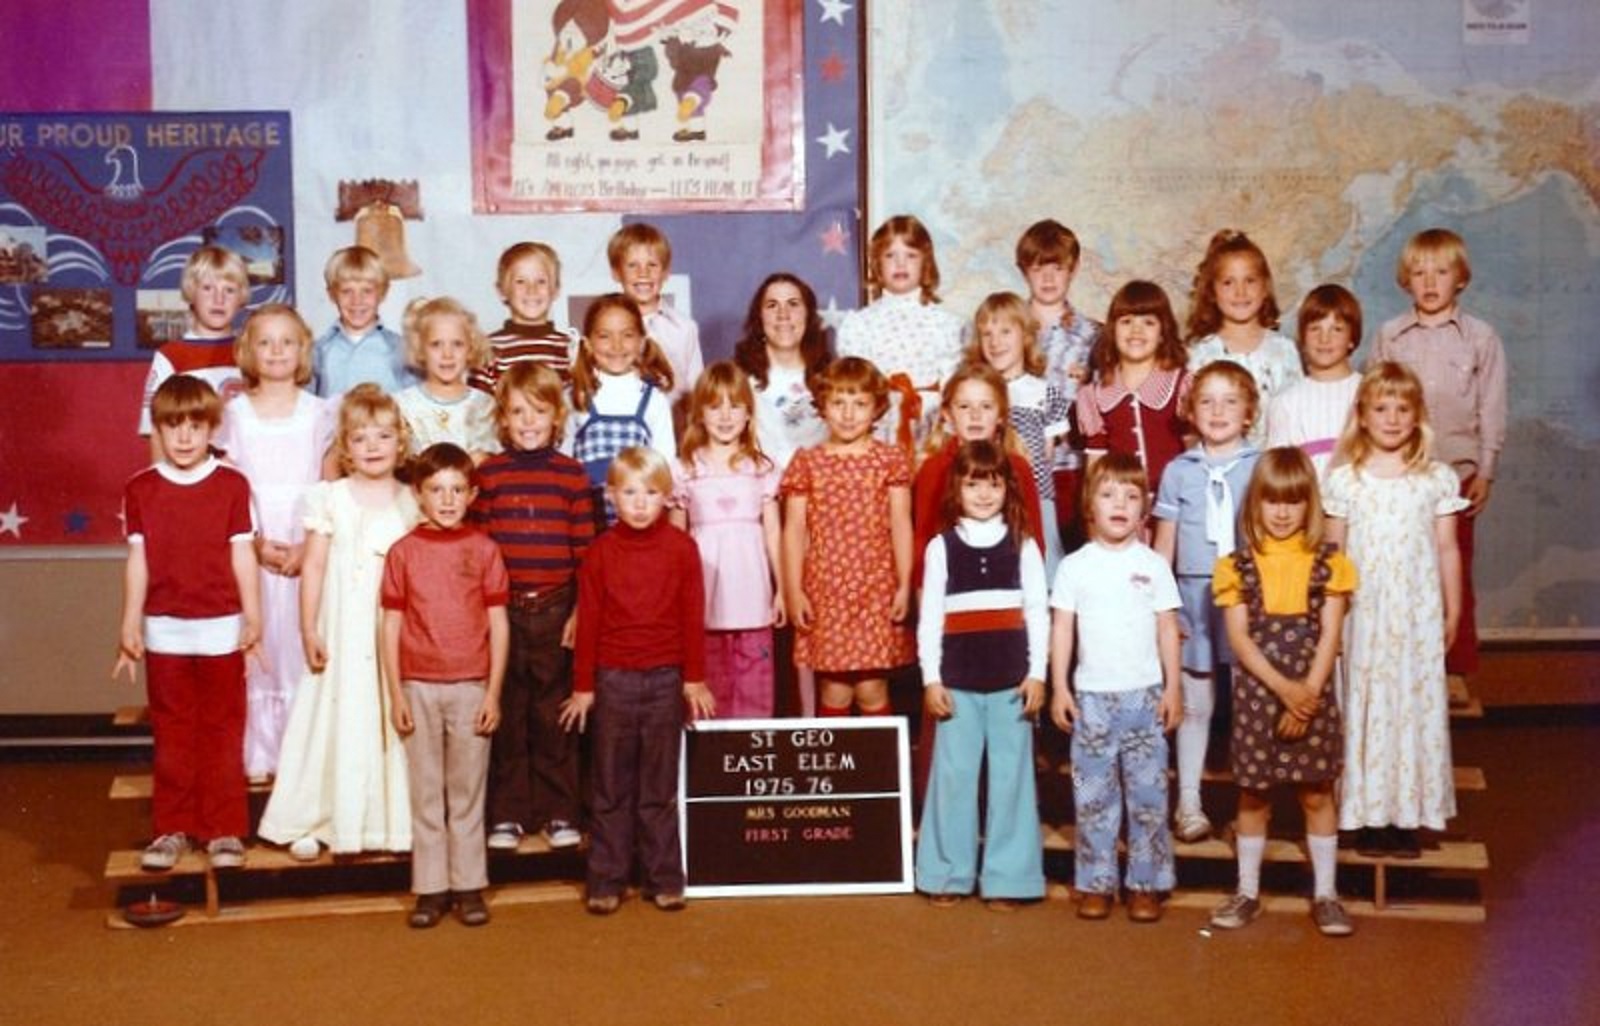 Mrs. Susan Goodman's 1975-1976 first grade class at East Elementary School